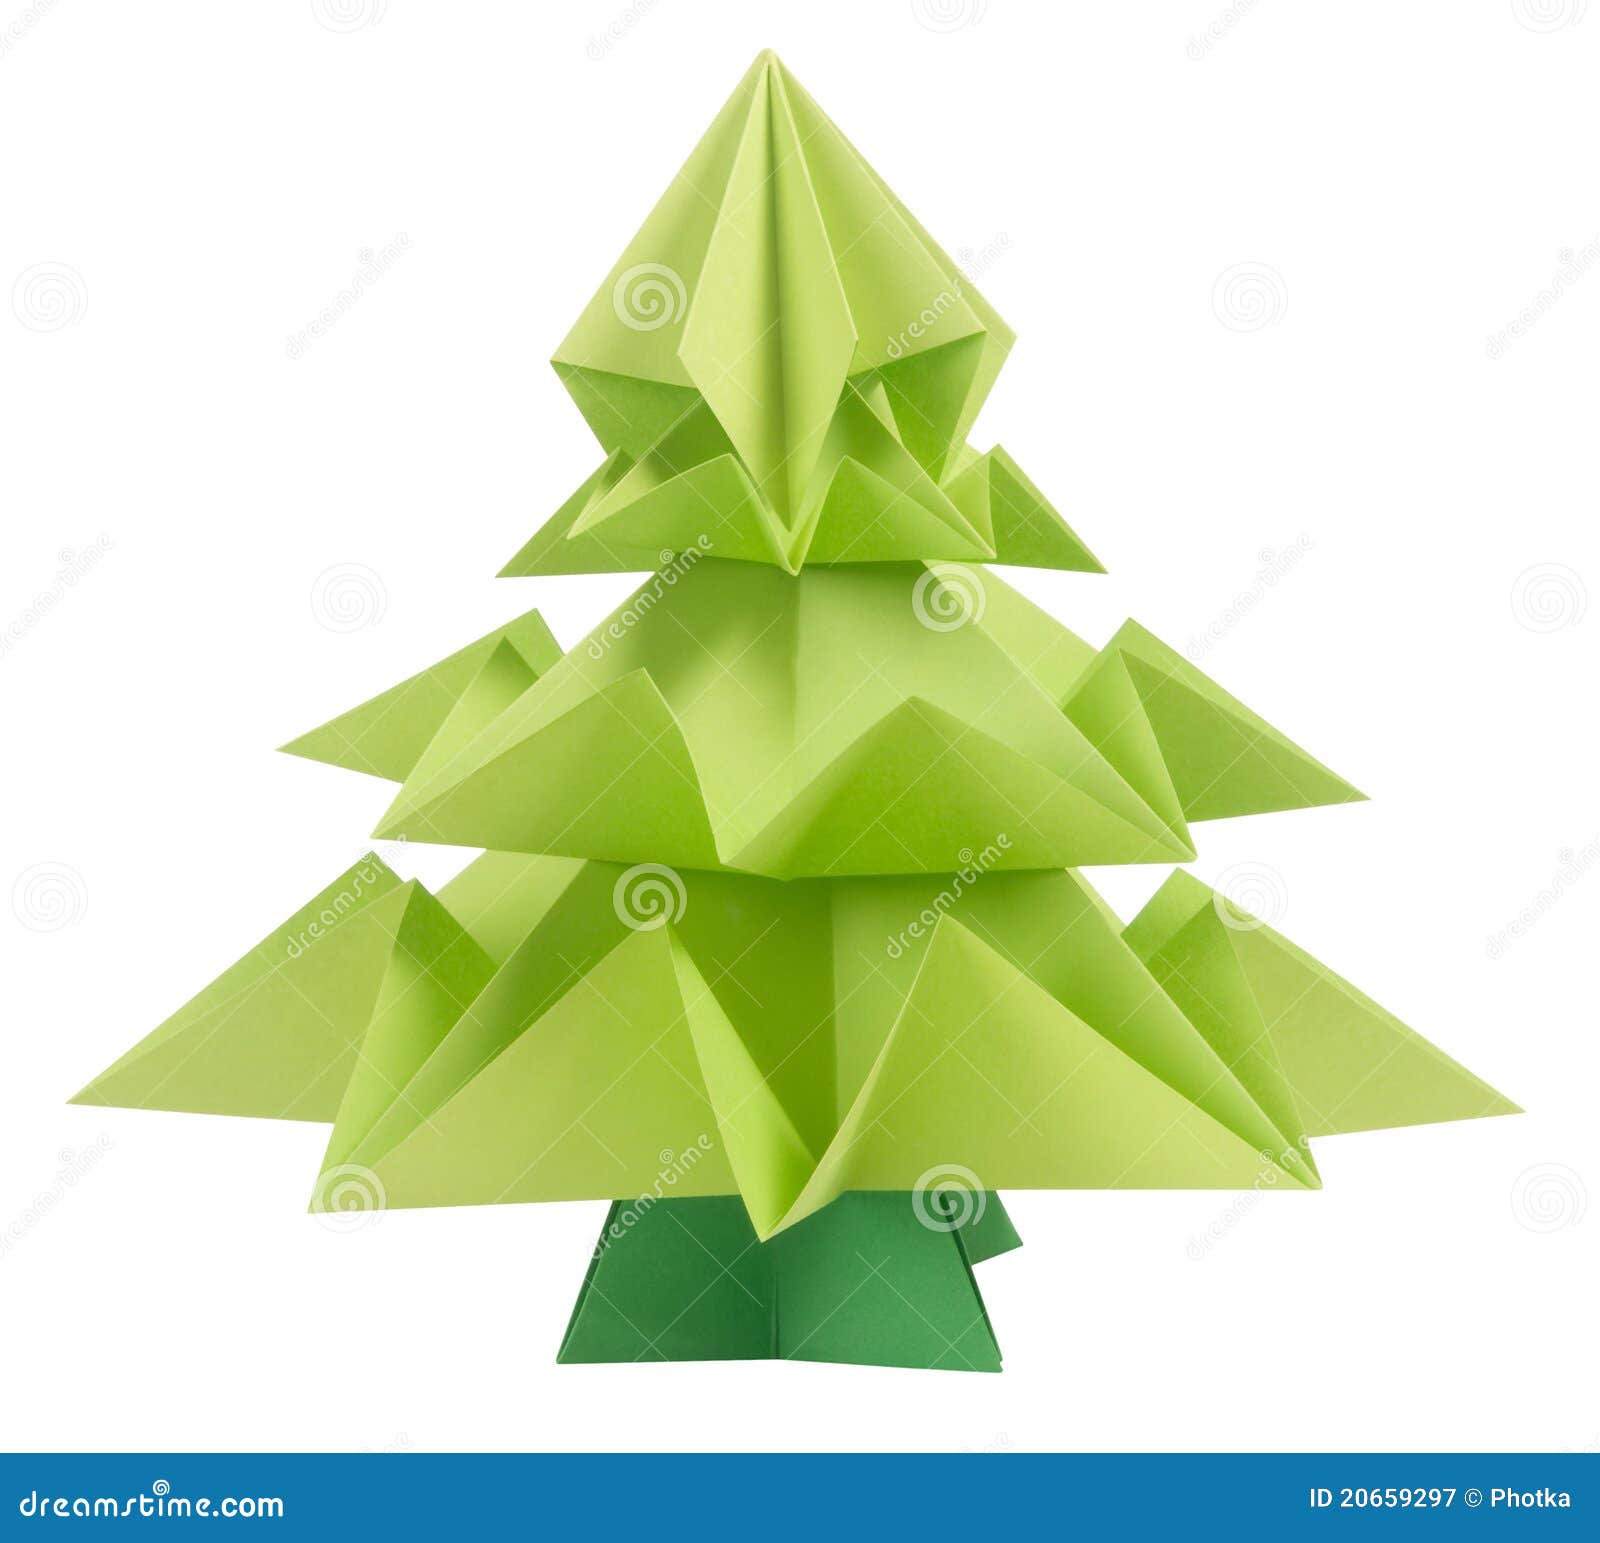 Albero Di Natale Origami.Albero Di Natale Di Origami Immagine Stock Immagine Di Isolato Verde 20659297